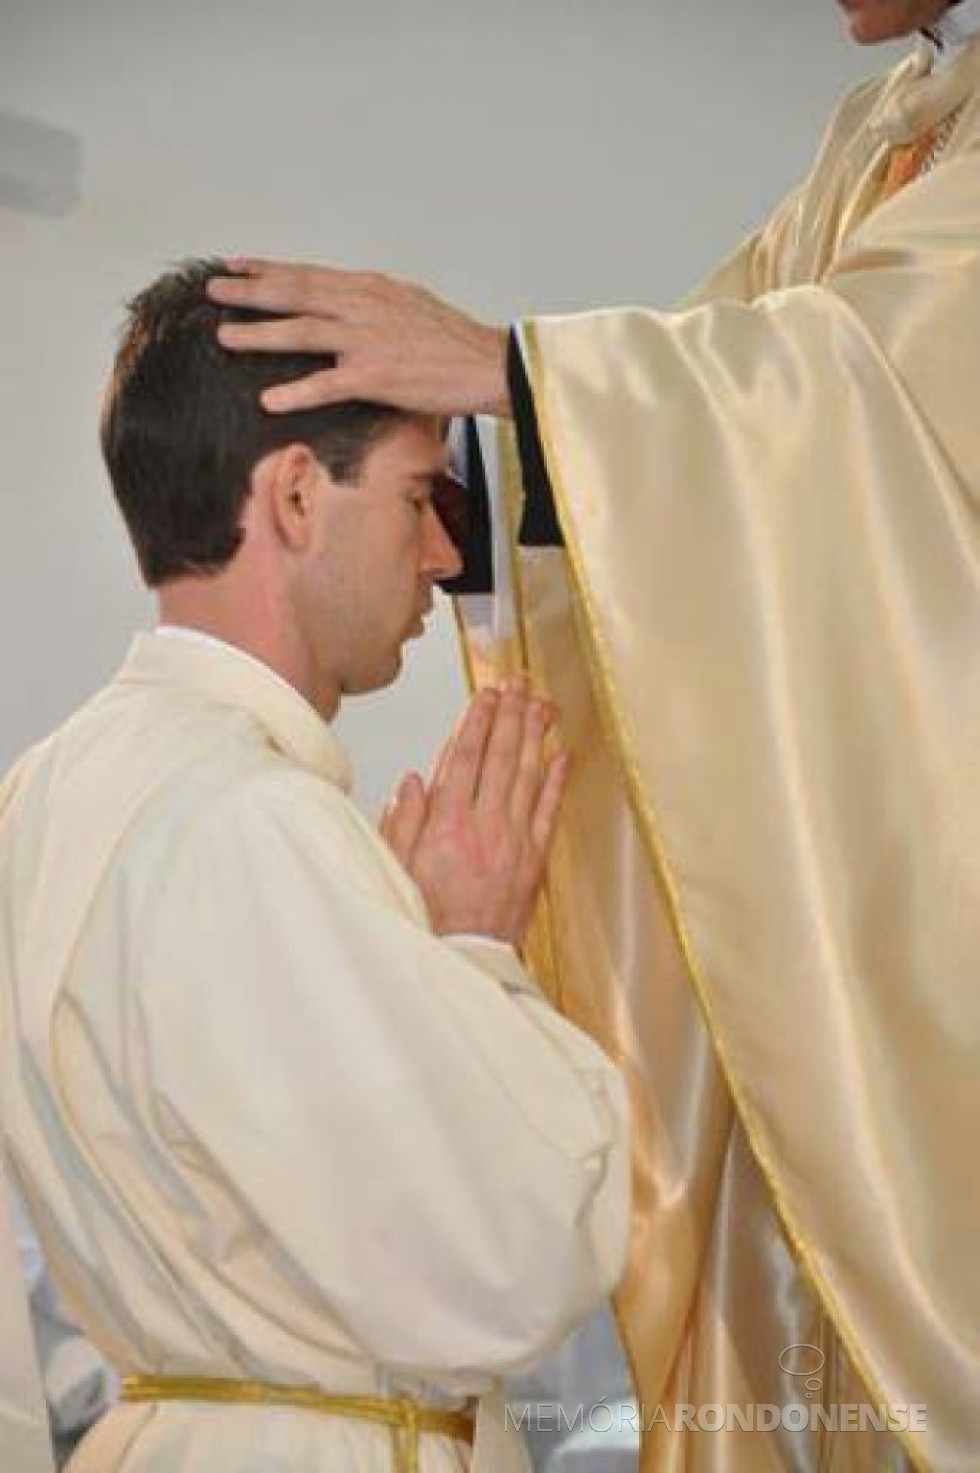 || Momento da ordenação sacerdotal de Jauri Strieder, na Matriz Católica Sagrado Coração de Jesus, de Marechal Rondon, em setembro de 2012.
Imagem: Acervo O Presente - FOTO 1 - 